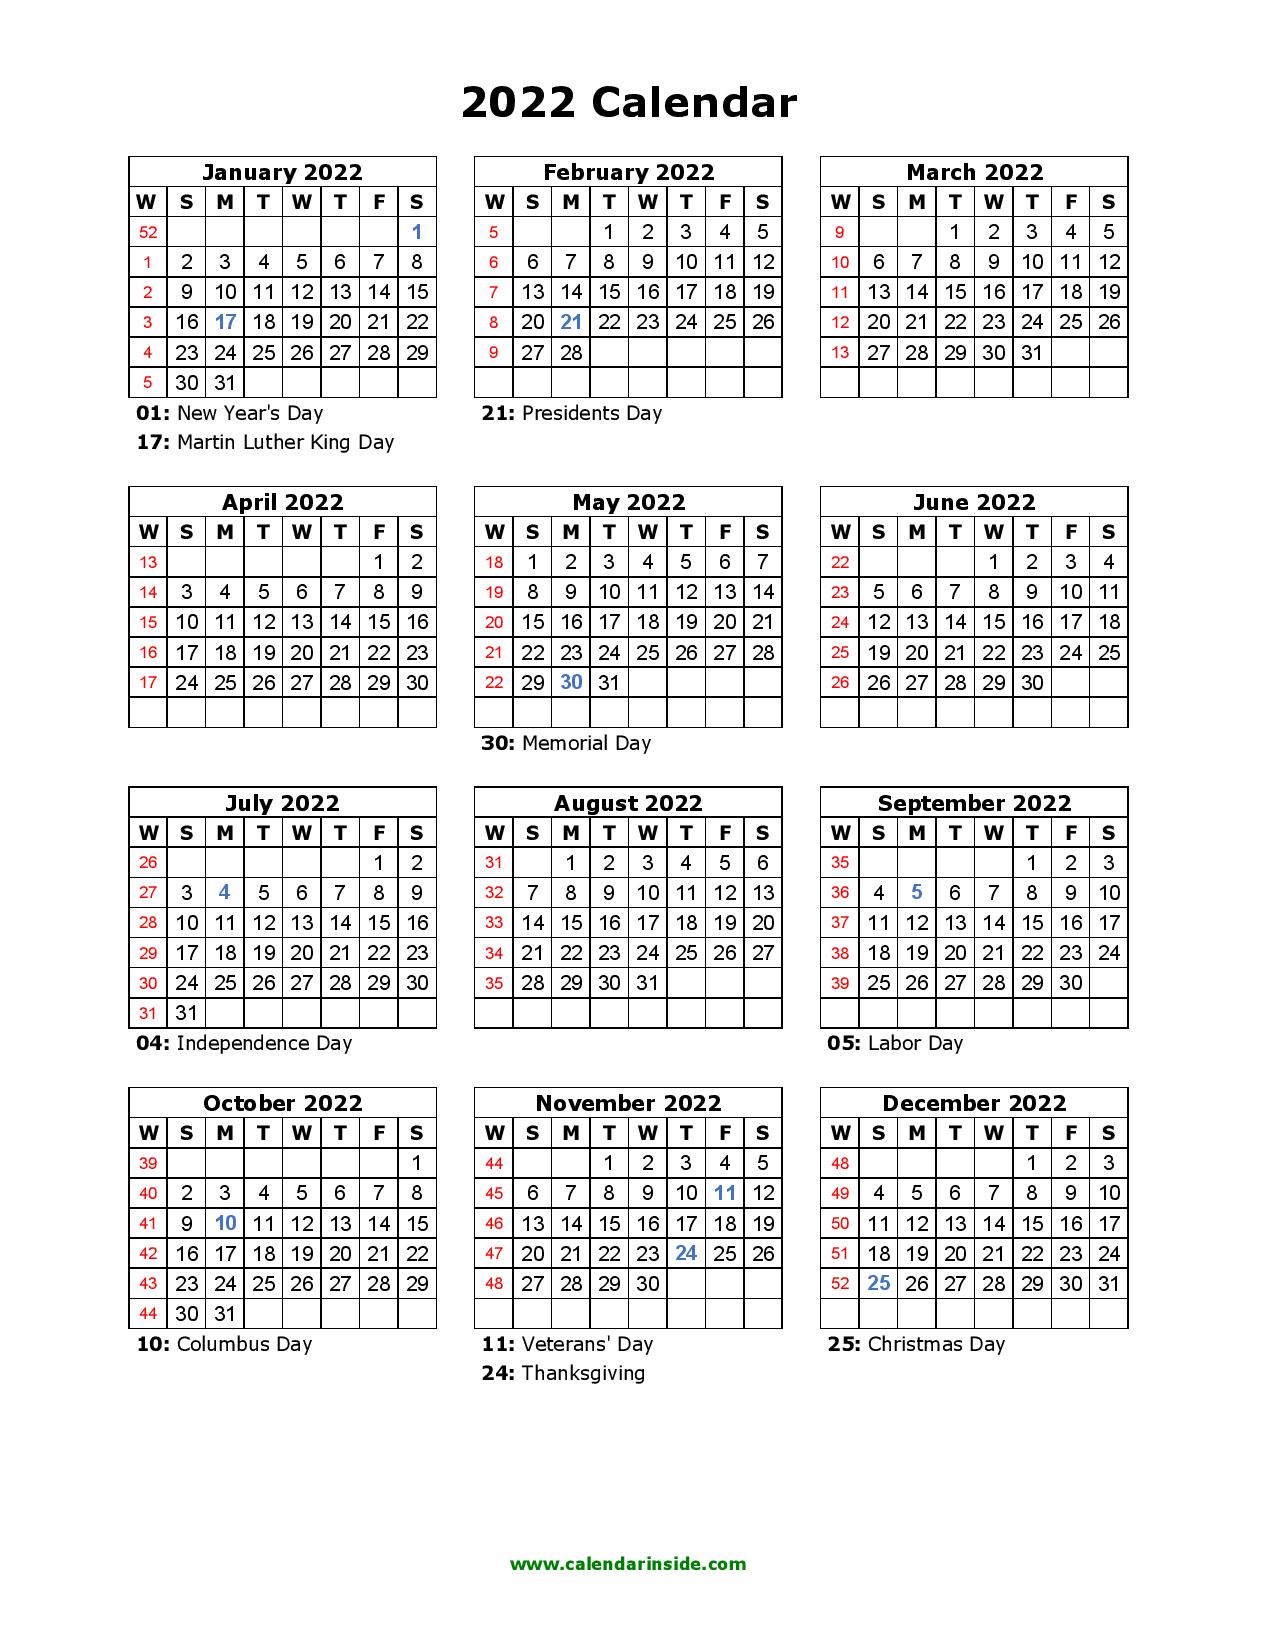 download 2022 calendar word